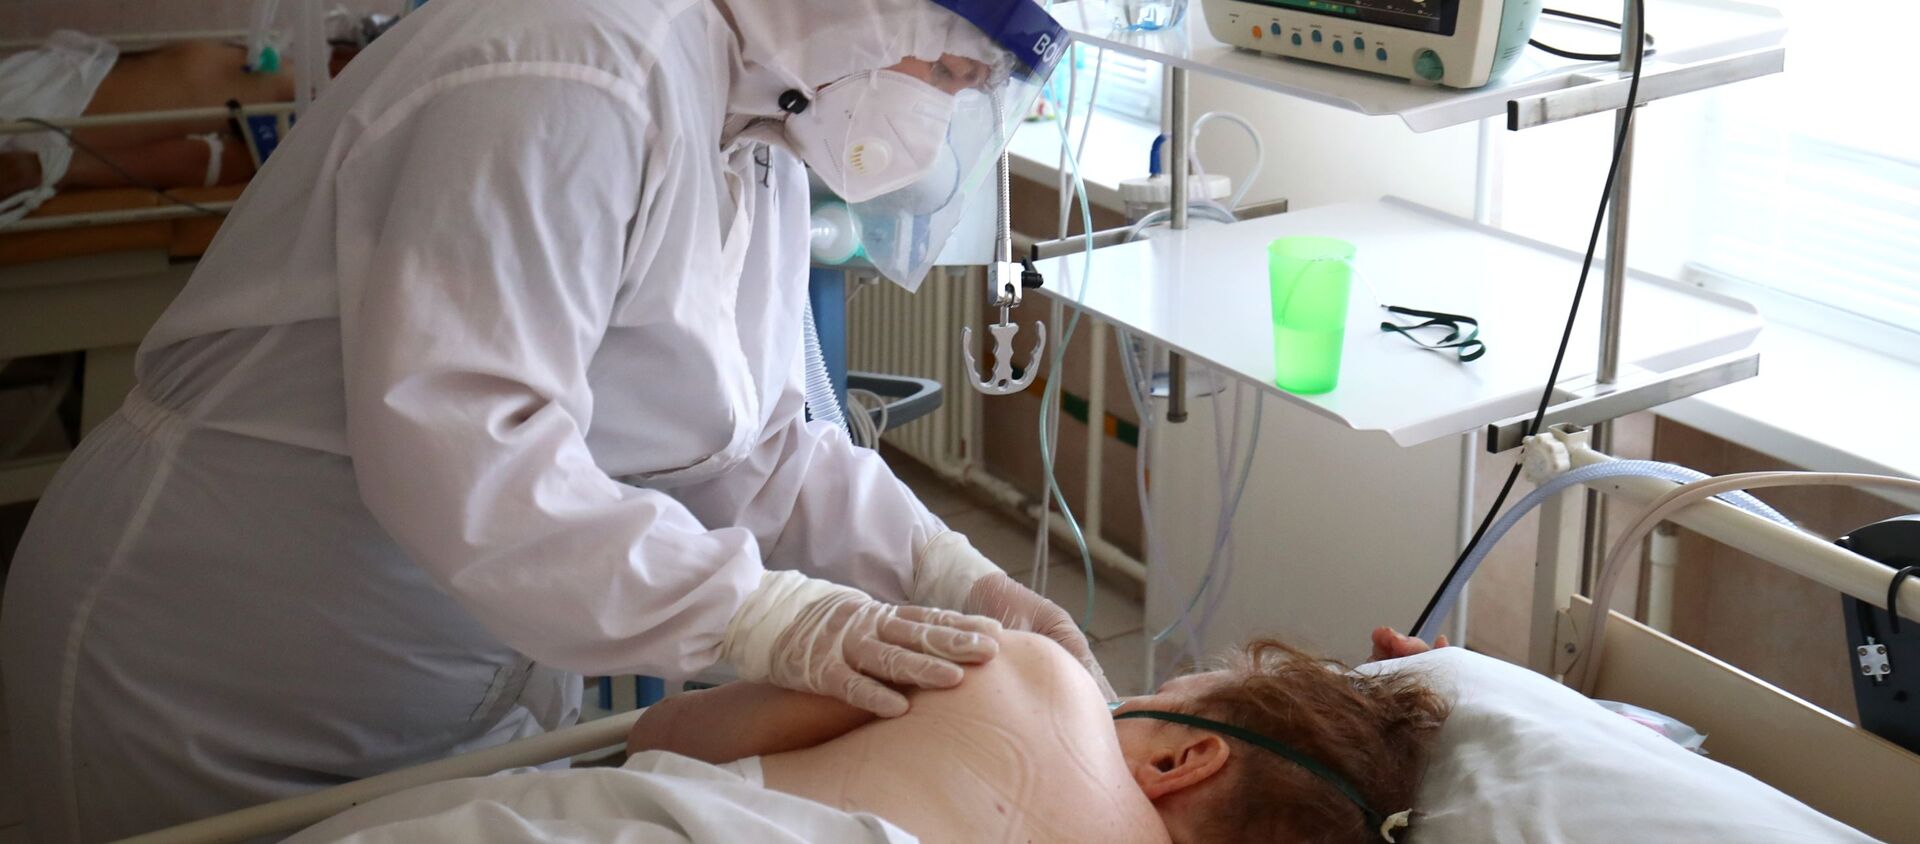 Лечение больных с Covid-19 в больнице скорой помощи в Волгограде - Sputnik Кыргызстан, 1920, 22.08.2021